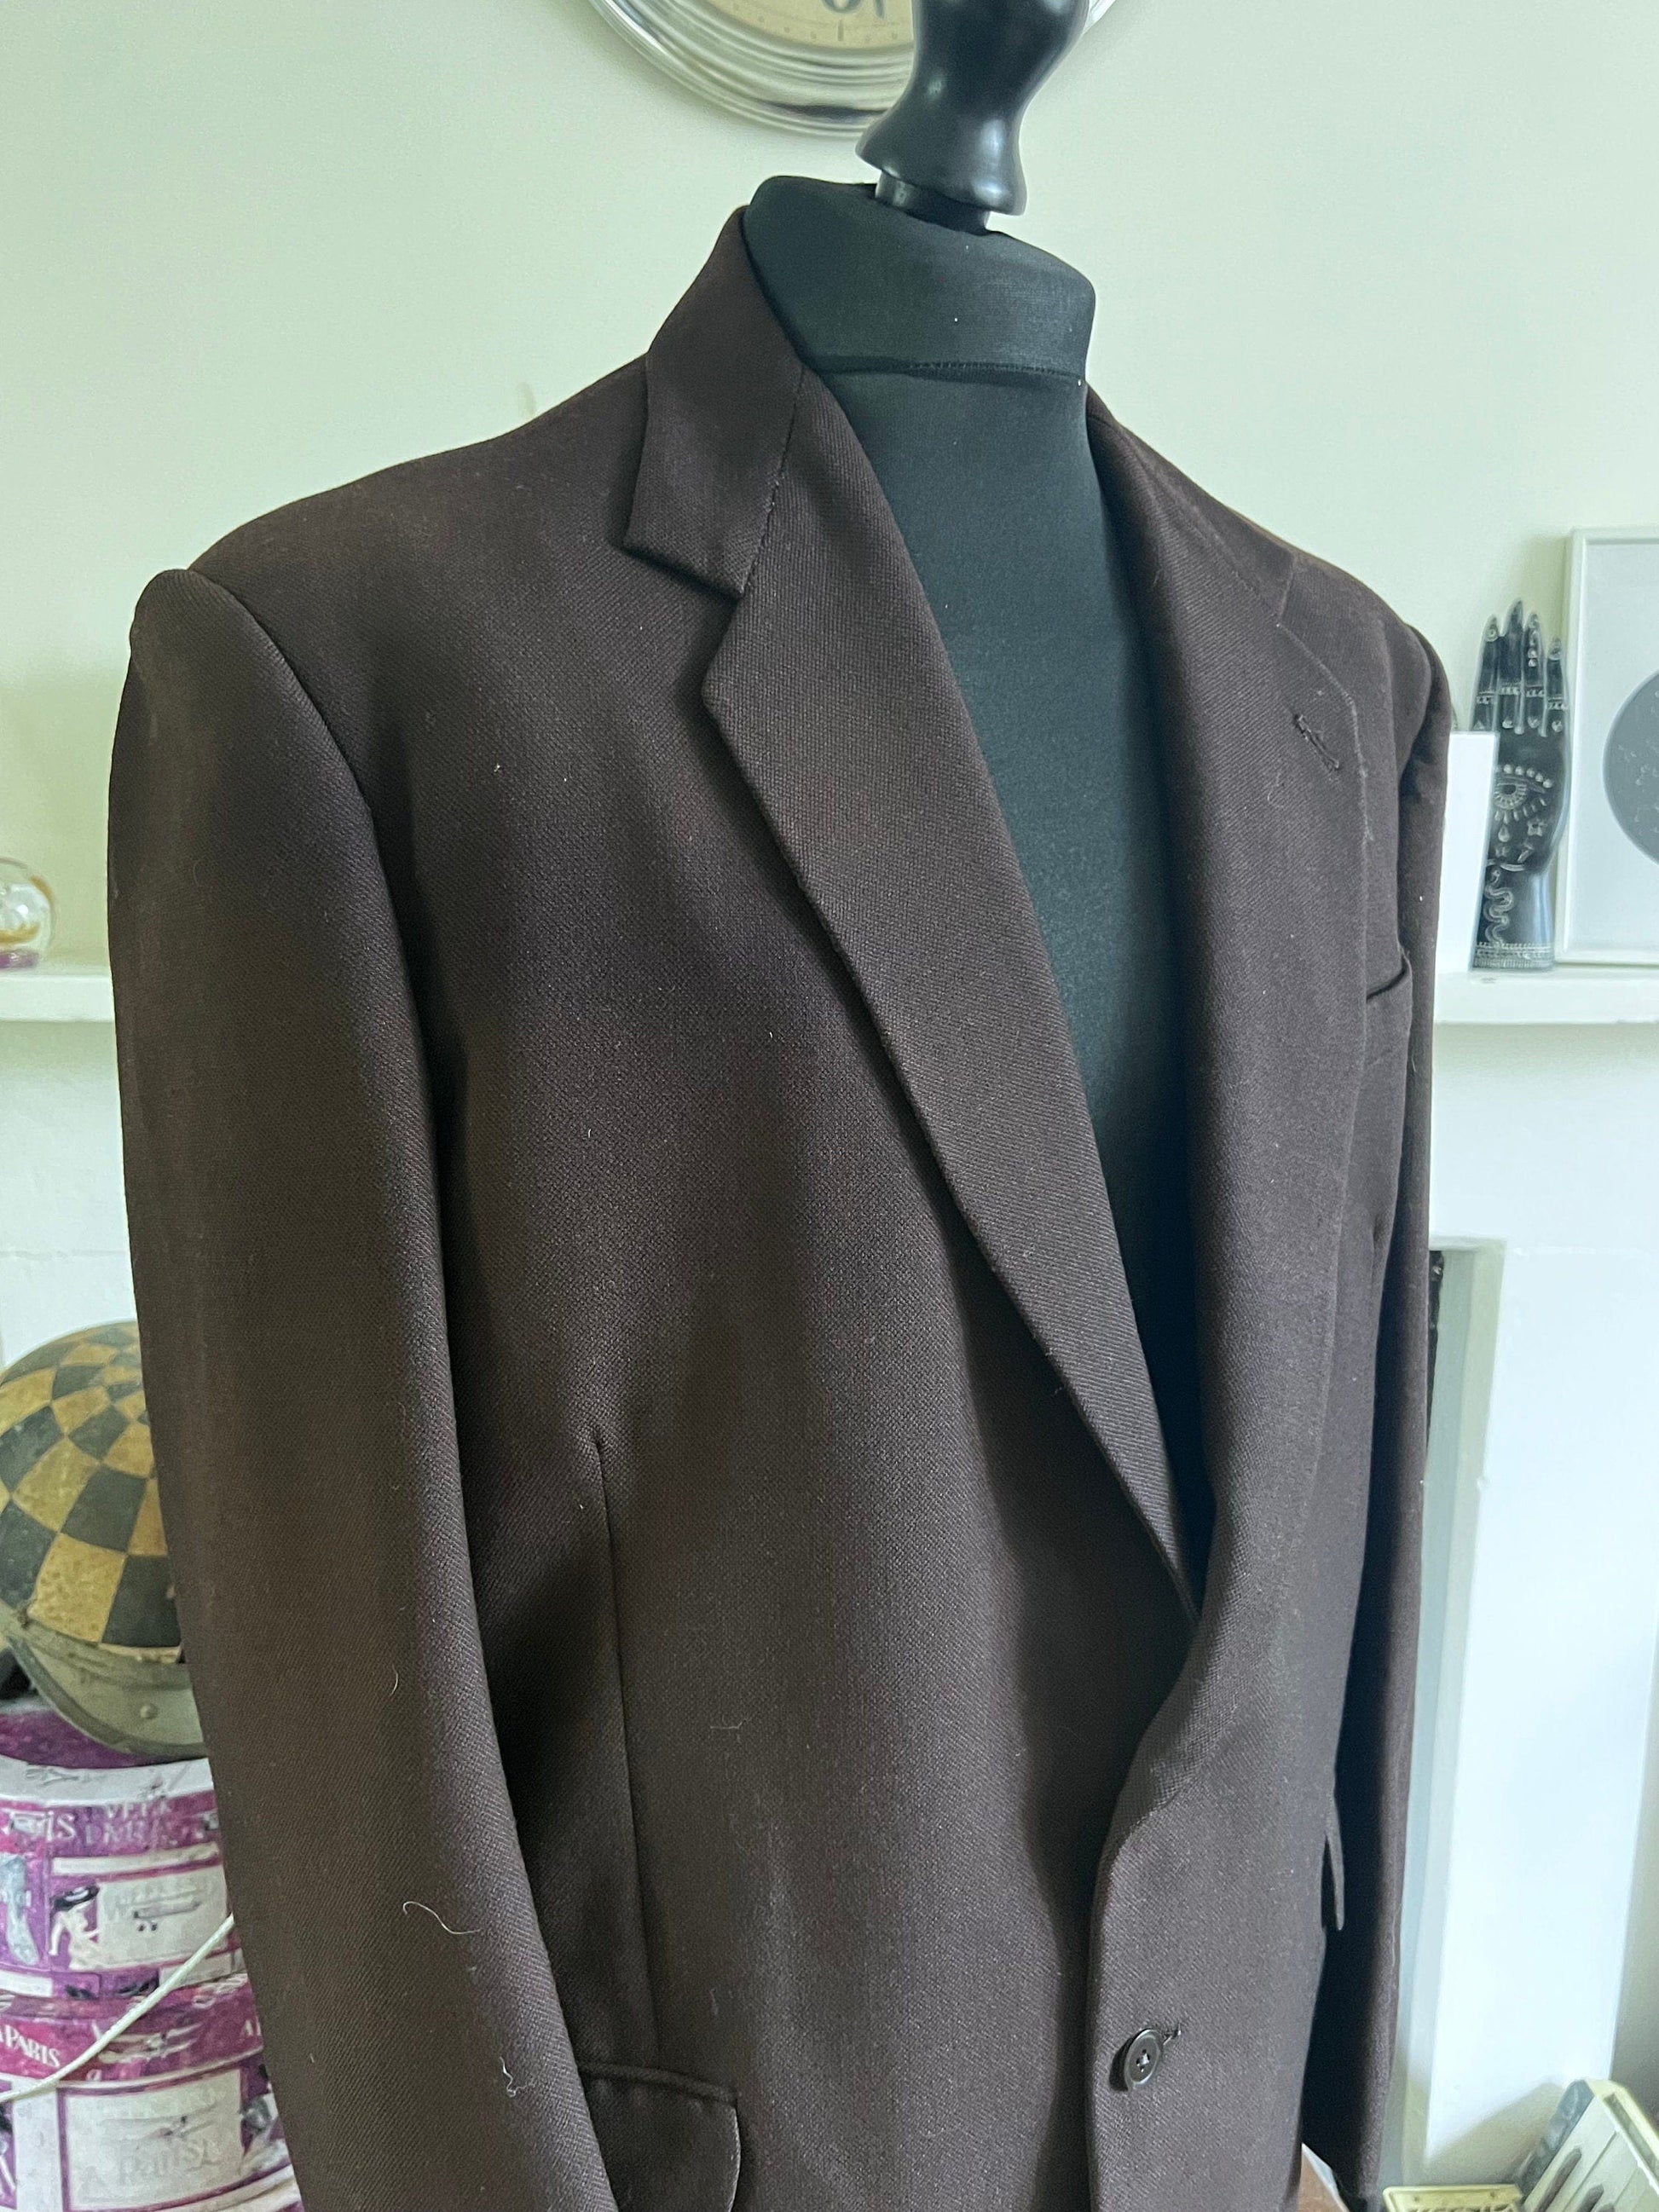 1940s Vintage Mens Brown, 2 Piece Suit, Trouser, Jacket, Mens Brown 40s suit, brown wool suit, Trousers, Jacket, Braces, 40ss vintage suit